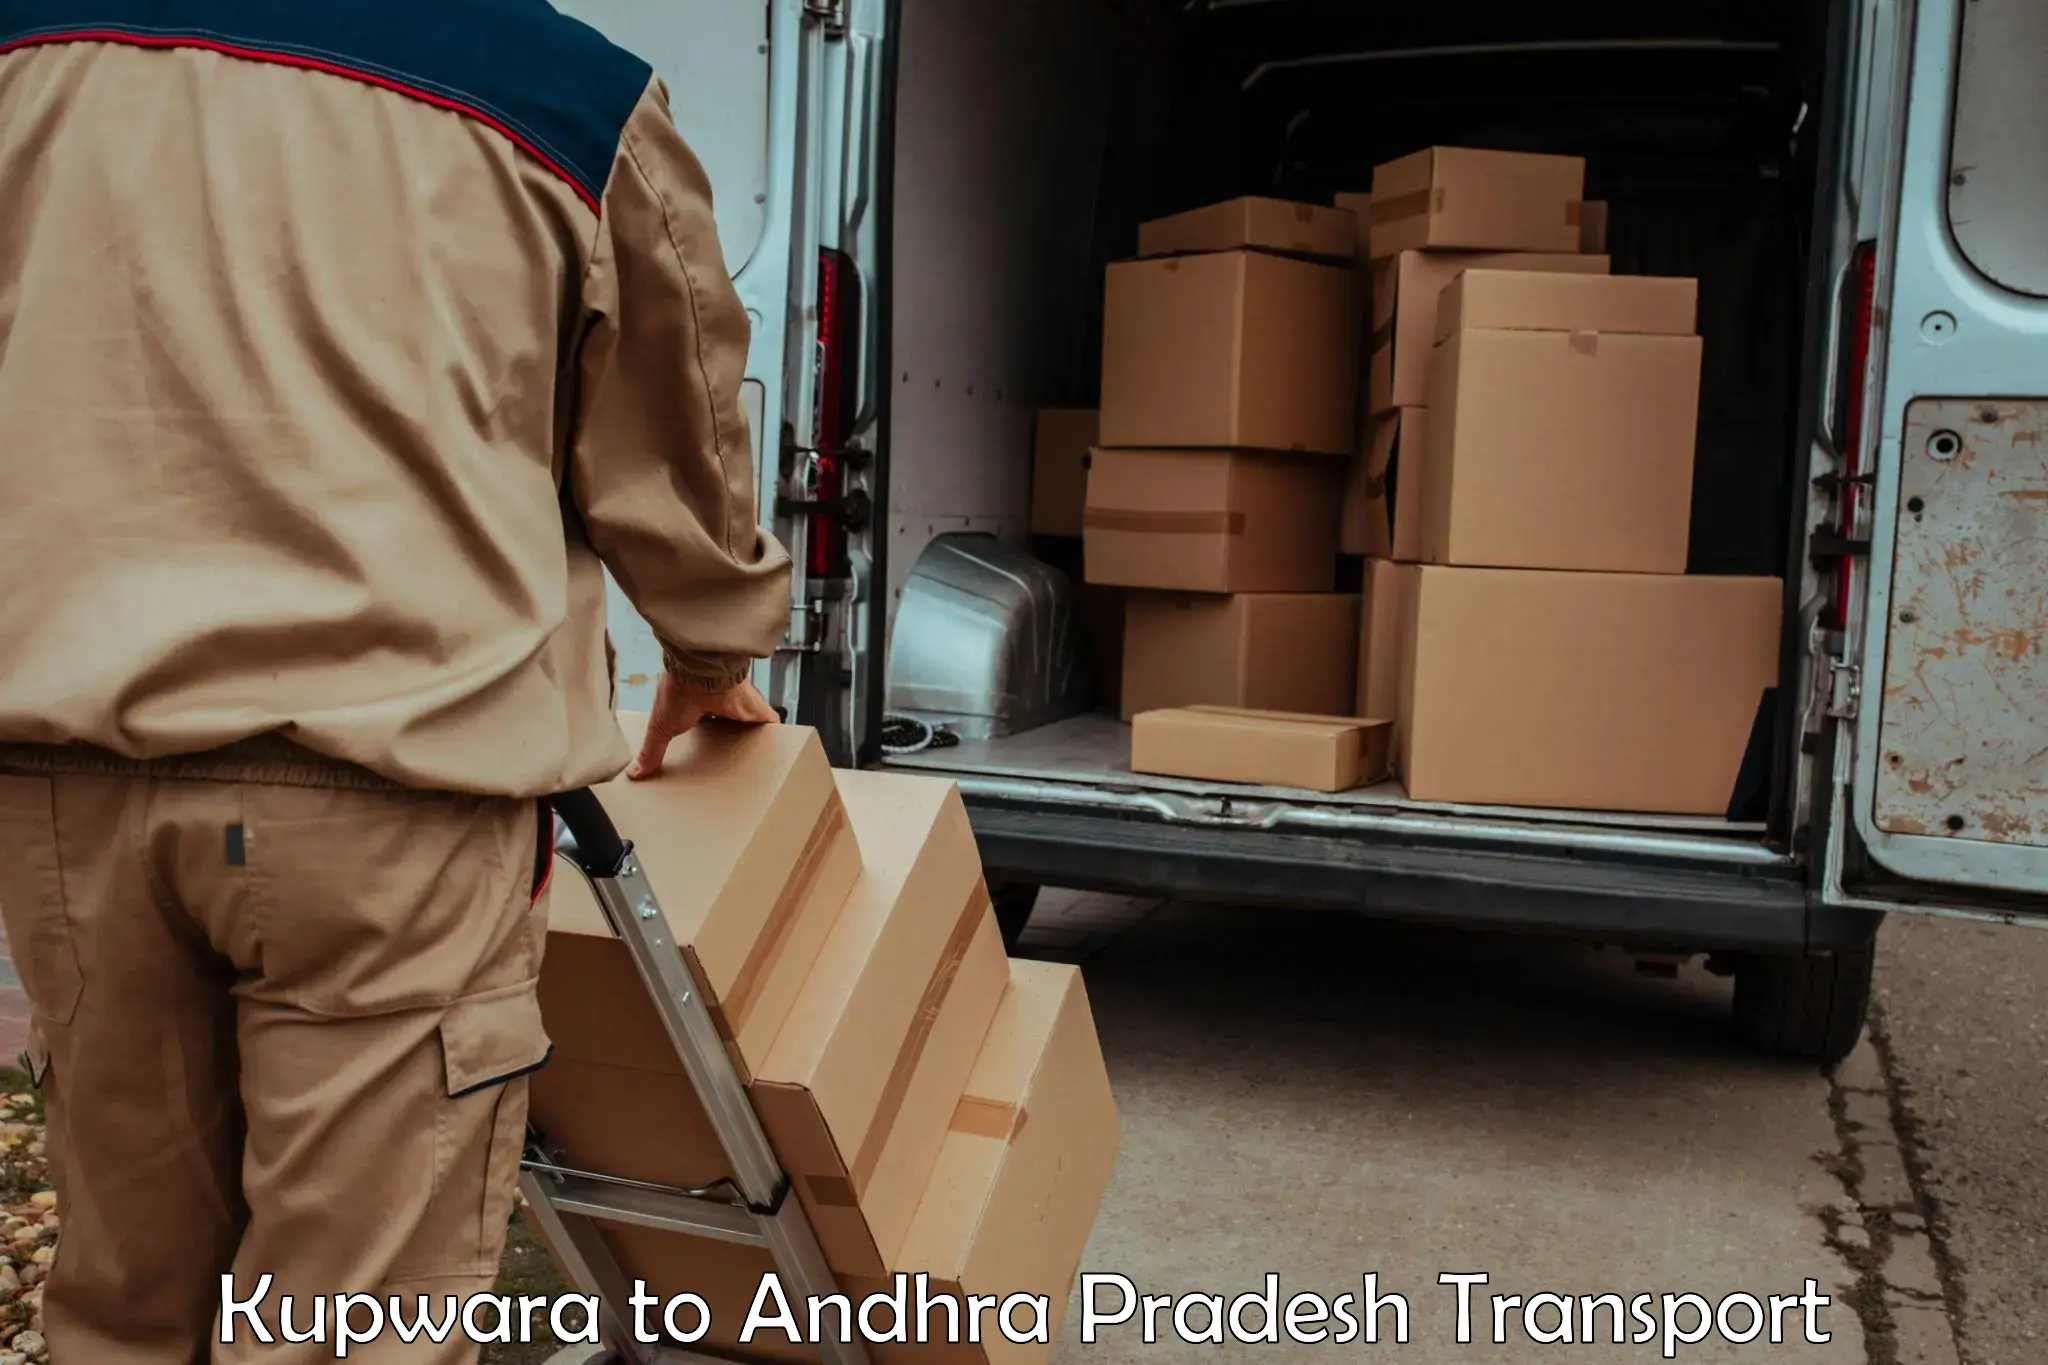 Truck transport companies in India Kupwara to Kambadur